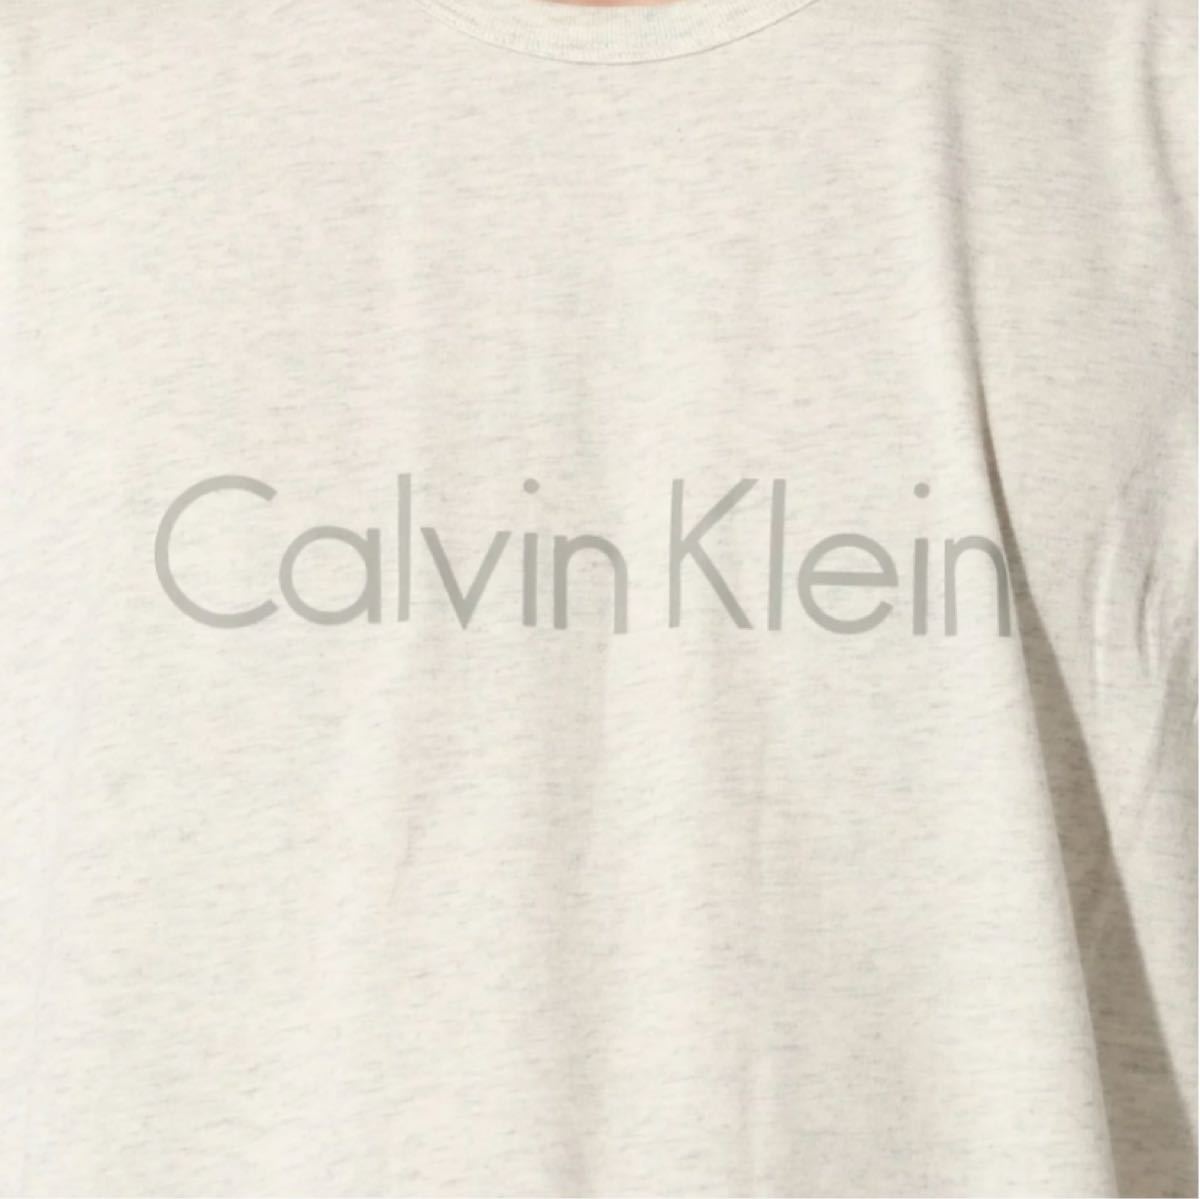 【新品未使用品】Calvin Klein カルバンクラインコットン 半袖 ロゴTシャツ 米国Sサイズ